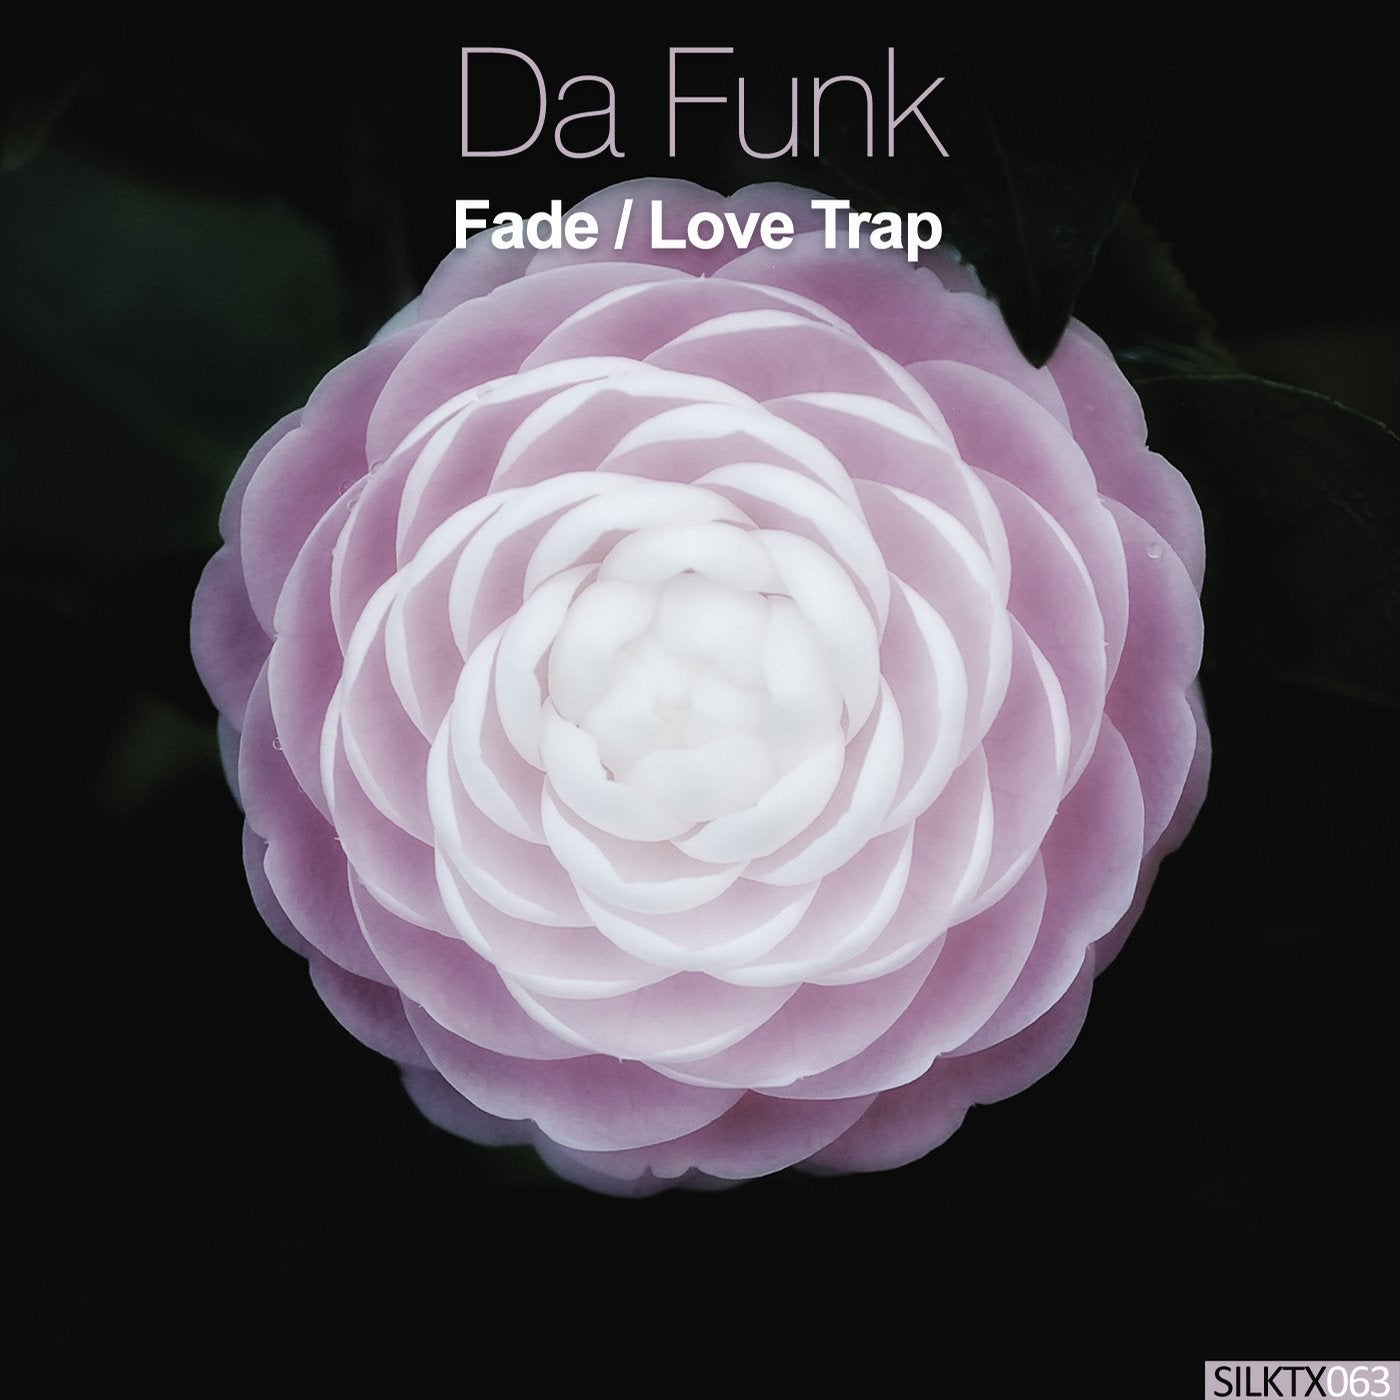 Fade / Love Trap